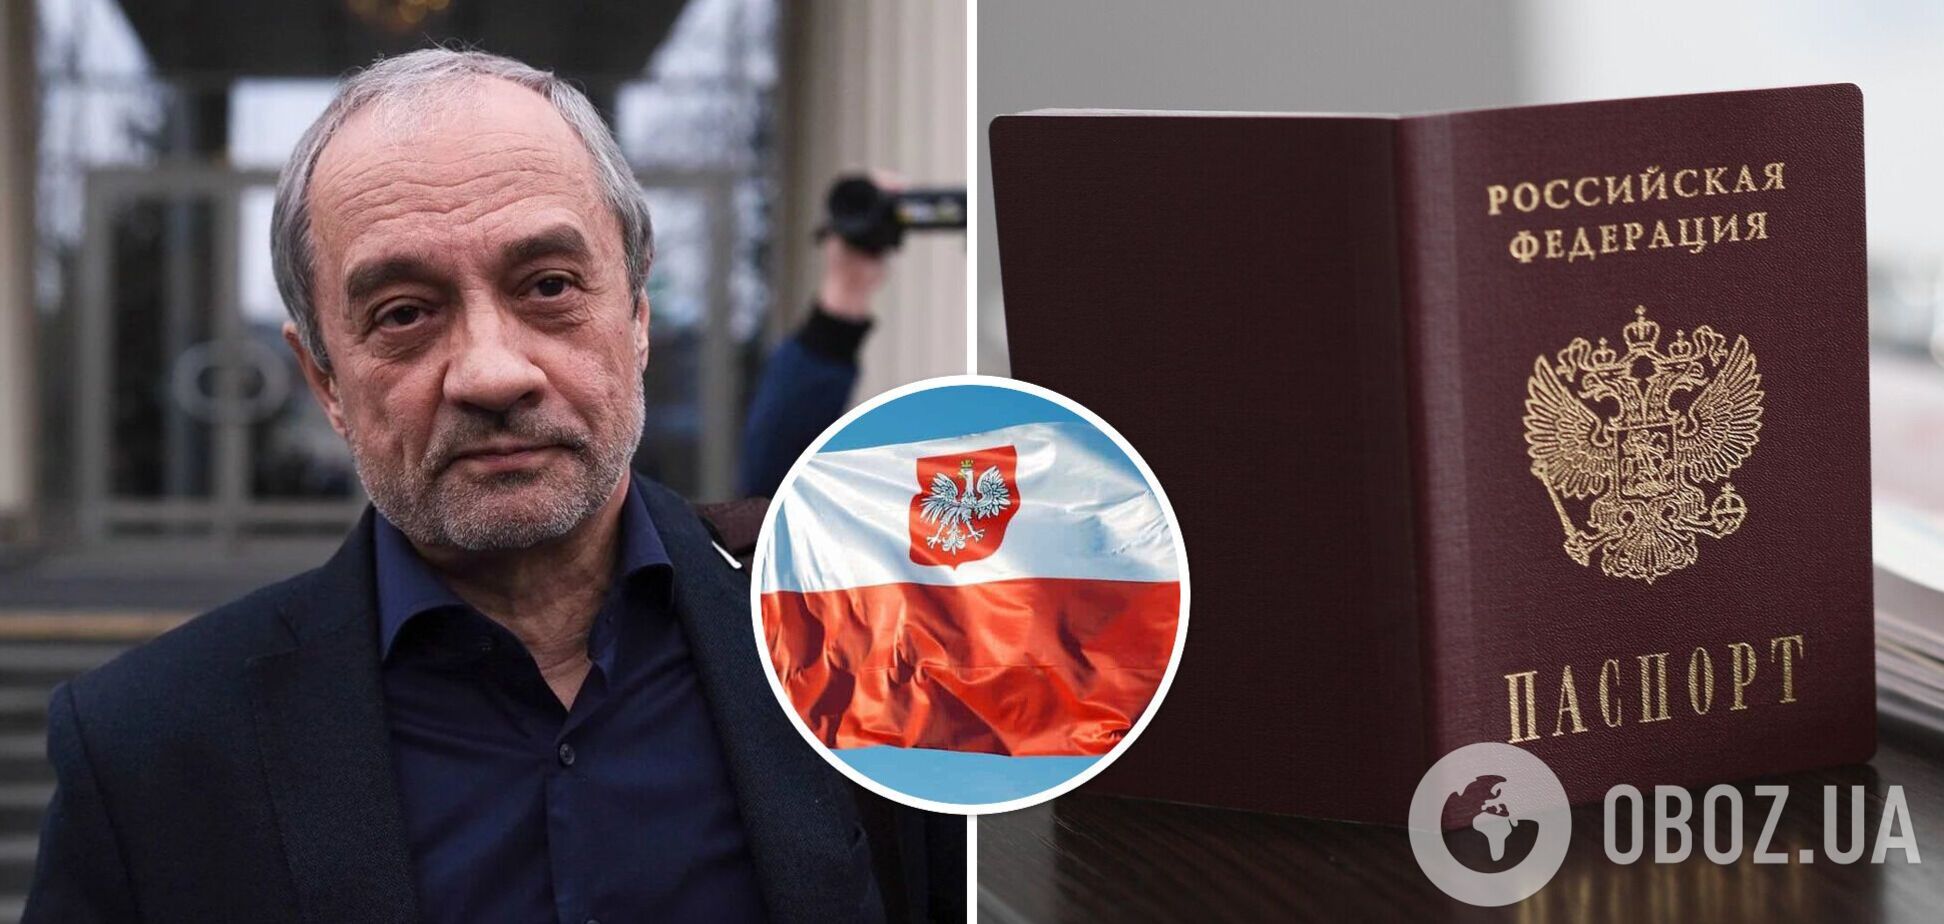 Подрабинек пожаловался на отношение поляков к российскому паспорту